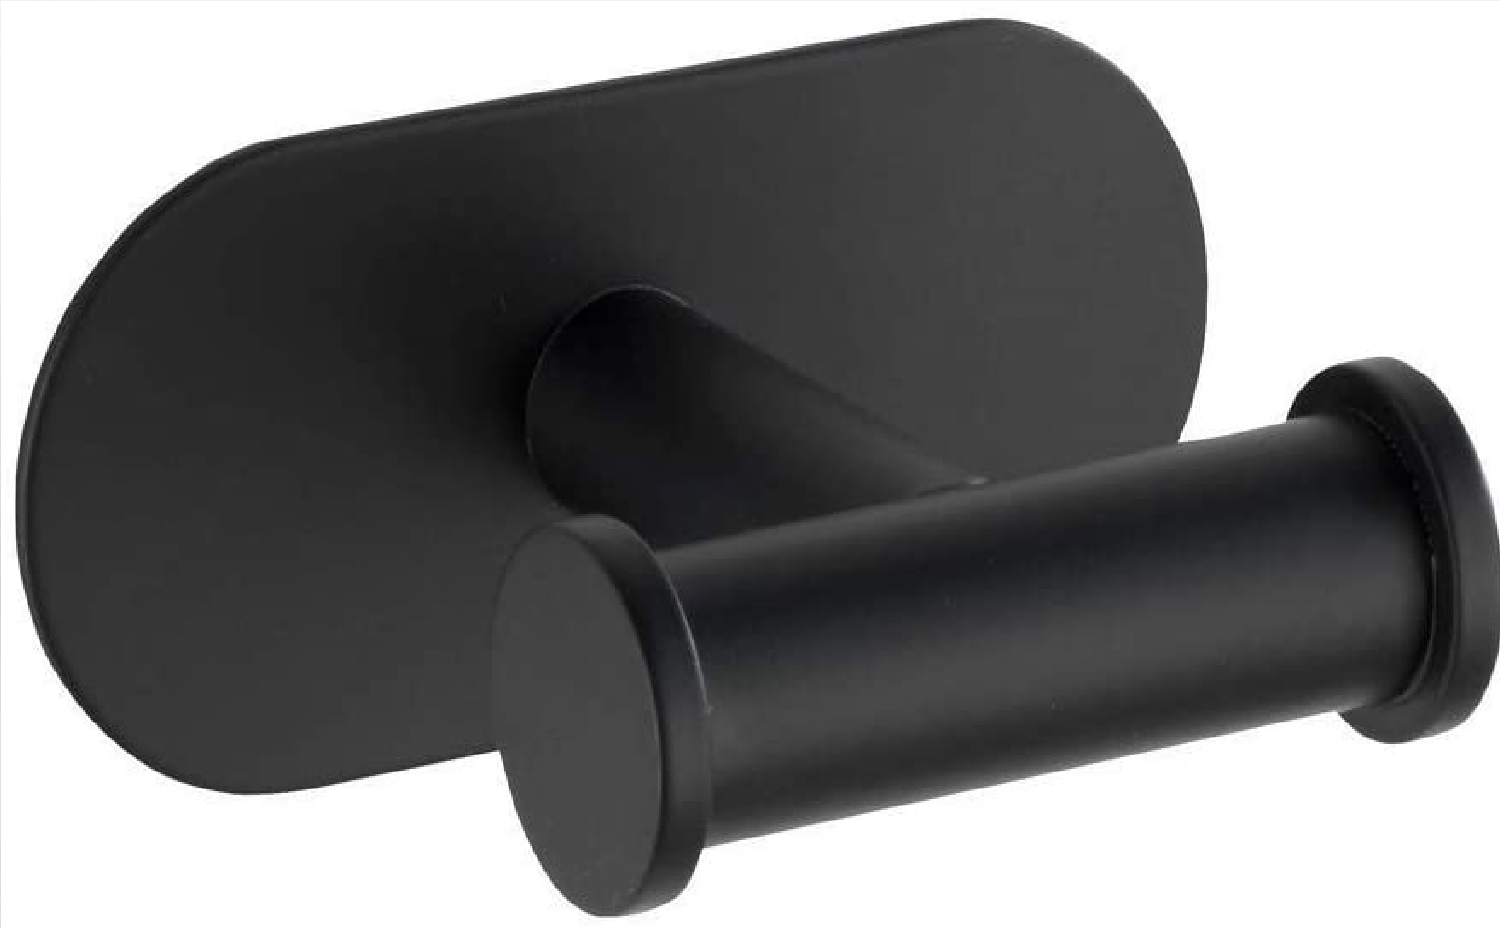 Turbo-Loc® Edelstahl Wandhaken Duo Orea Black Matt - Badhaken, Befestigen ohne bohren, Edelstahl rostfrei, 10 x 4.5 x 6.5 cm, Schwarz